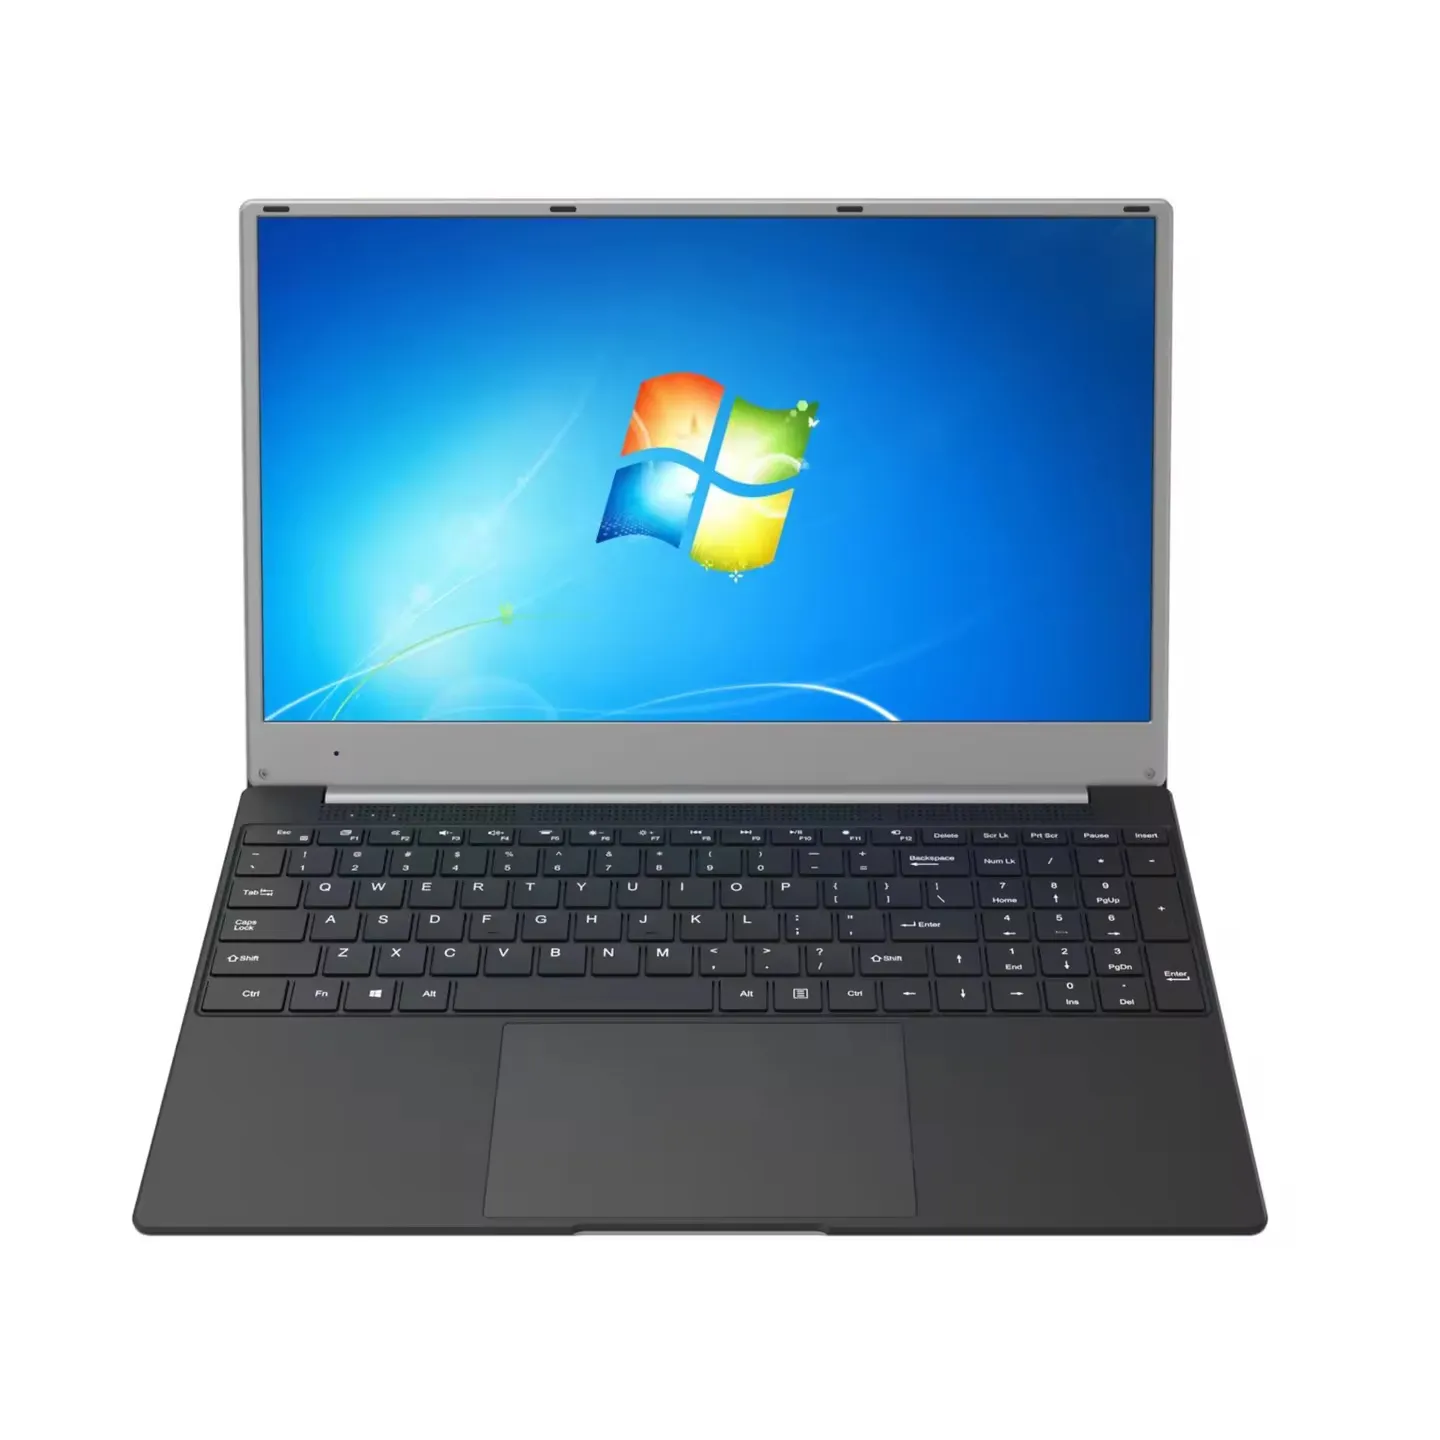 Laptop MF158 Intel J4105 inci layar IPS DDR4/SSD 6GB/256GB 4core 4thread, 1.50 GHz-2.50GHz 5000MAH,7.6V efektif